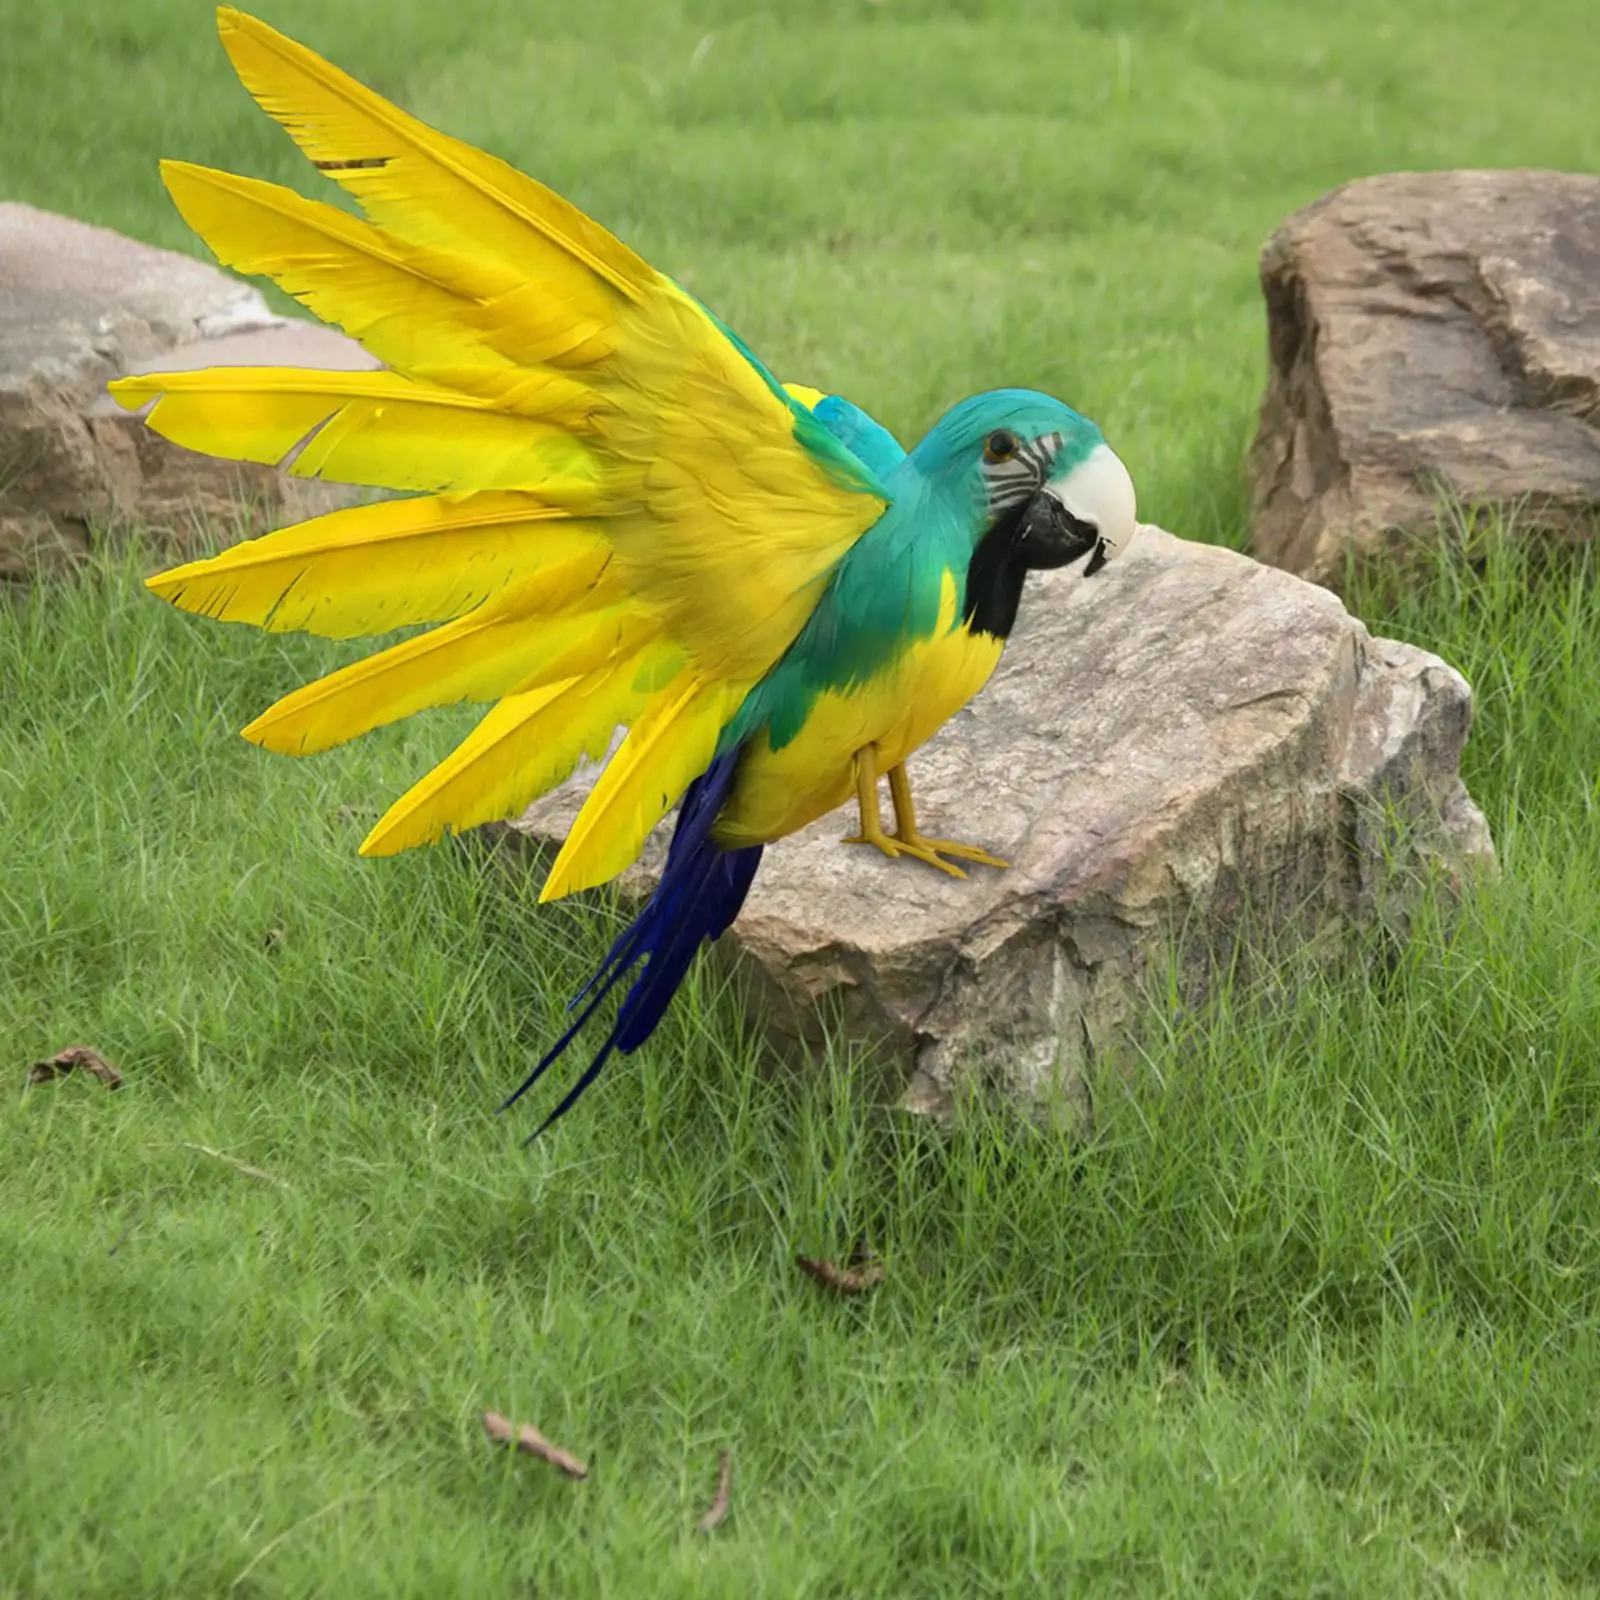 Artificial Parrot Model Feather Fake Birds Statue for Home Garden Lawn Decor